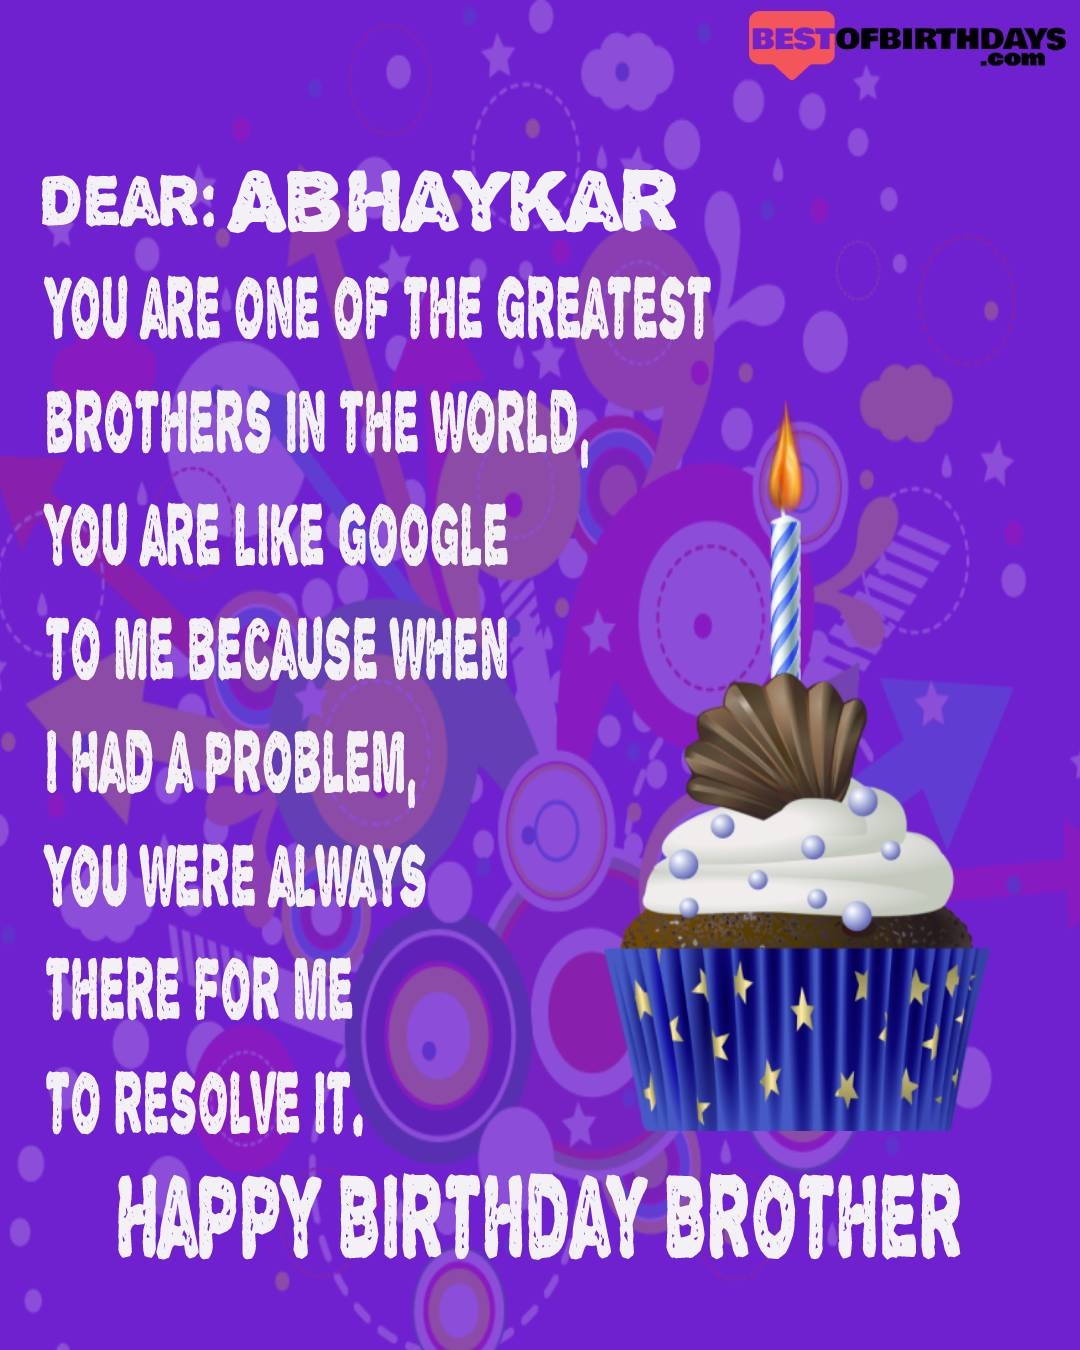 Happy birthday abhaykar bhai brother bro